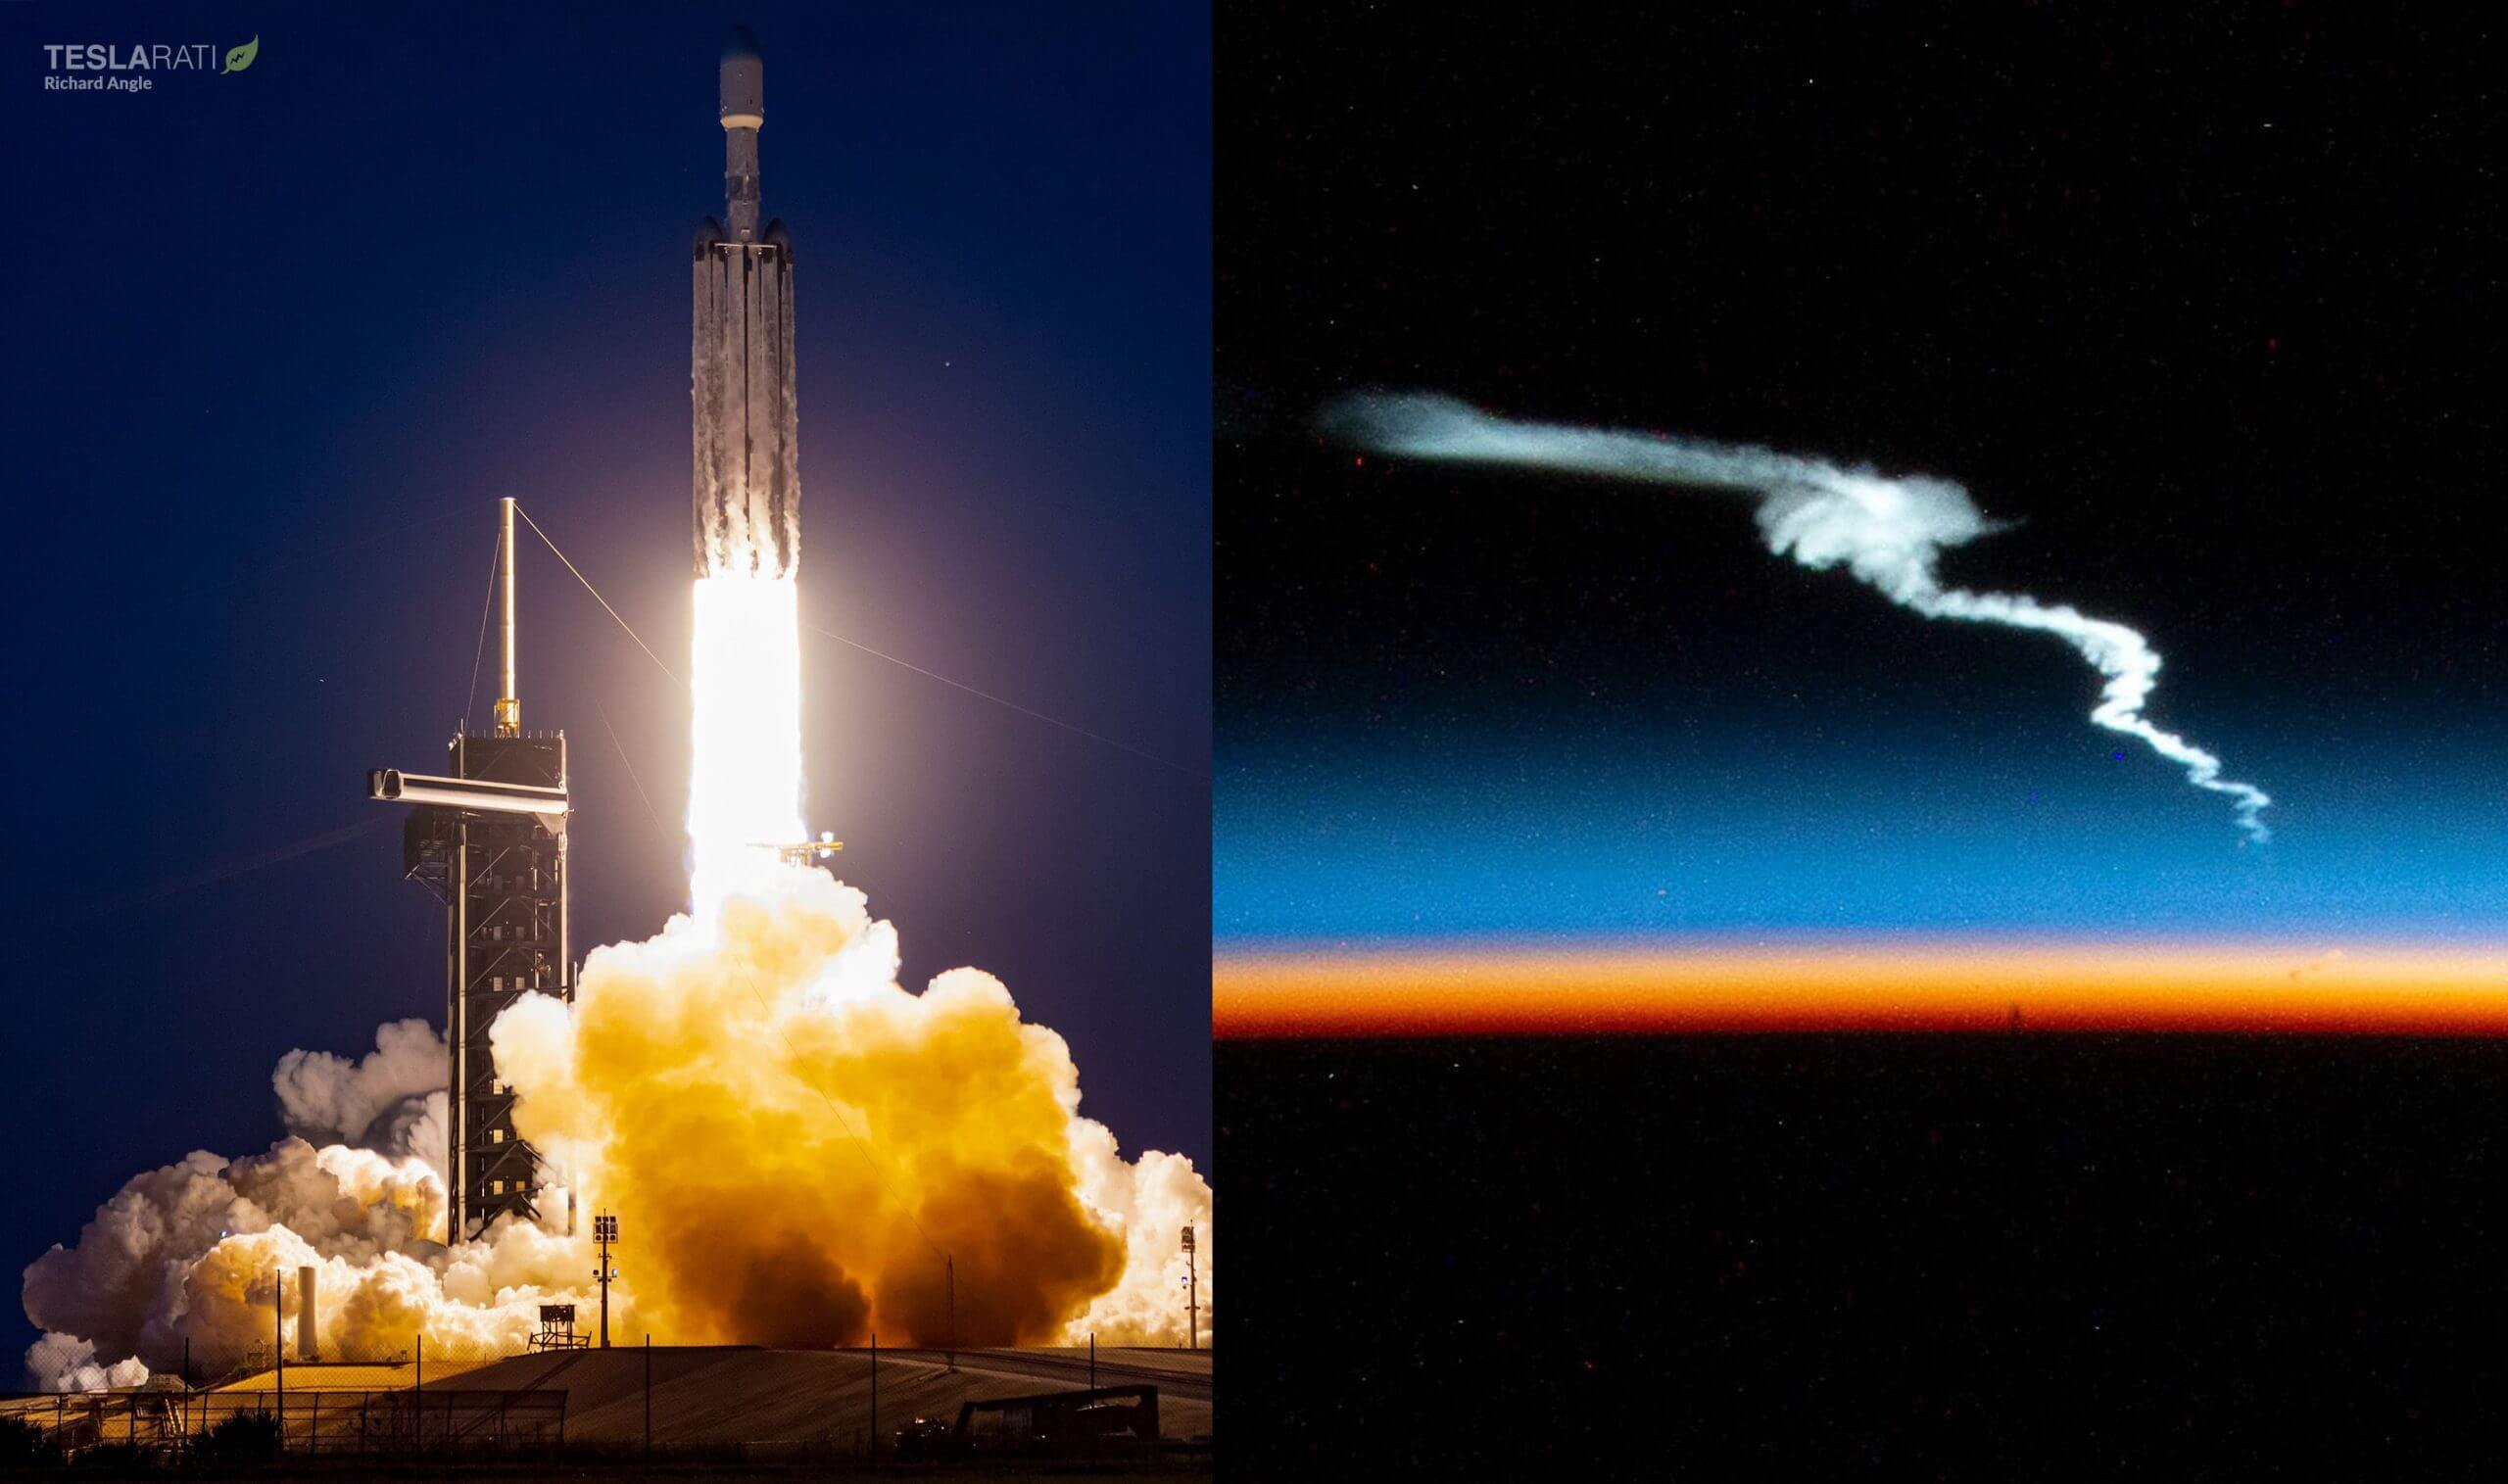 El último lanzamiento de Falcon Heavy de SpaceX capturado desde una perspectiva poco común